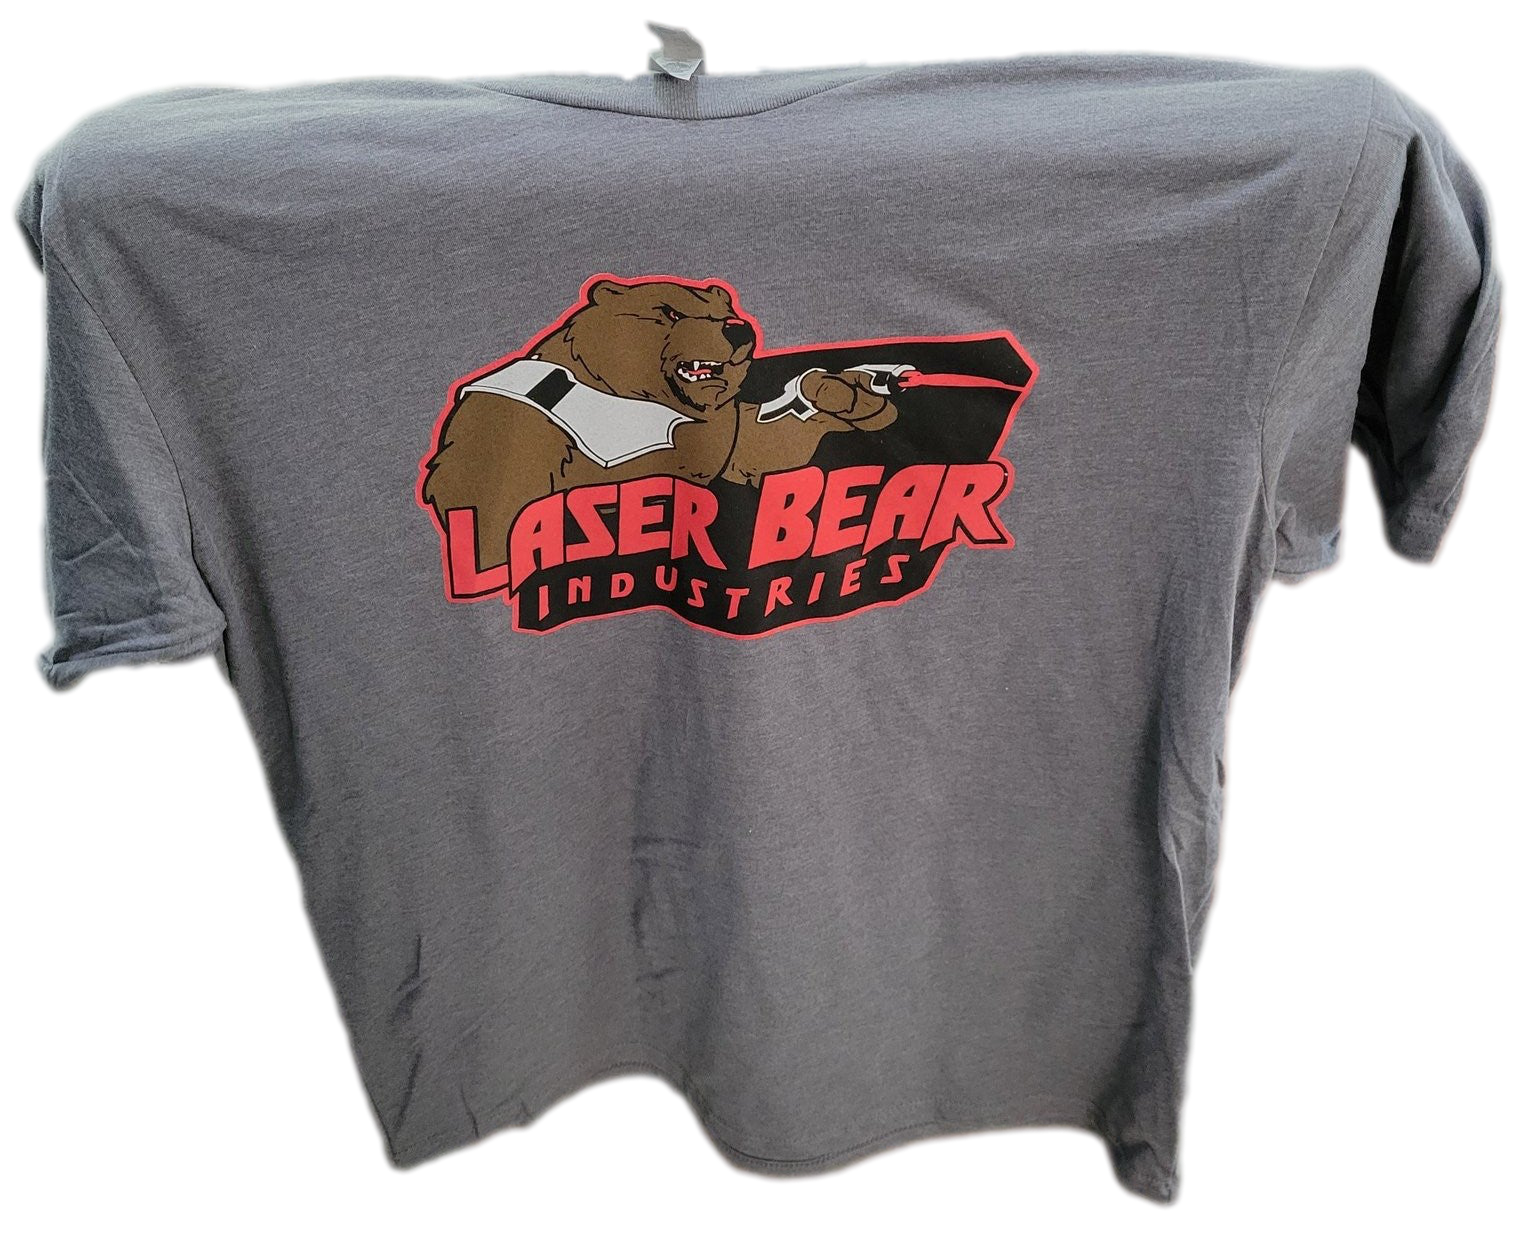 Laser Bear Official T-Shirt